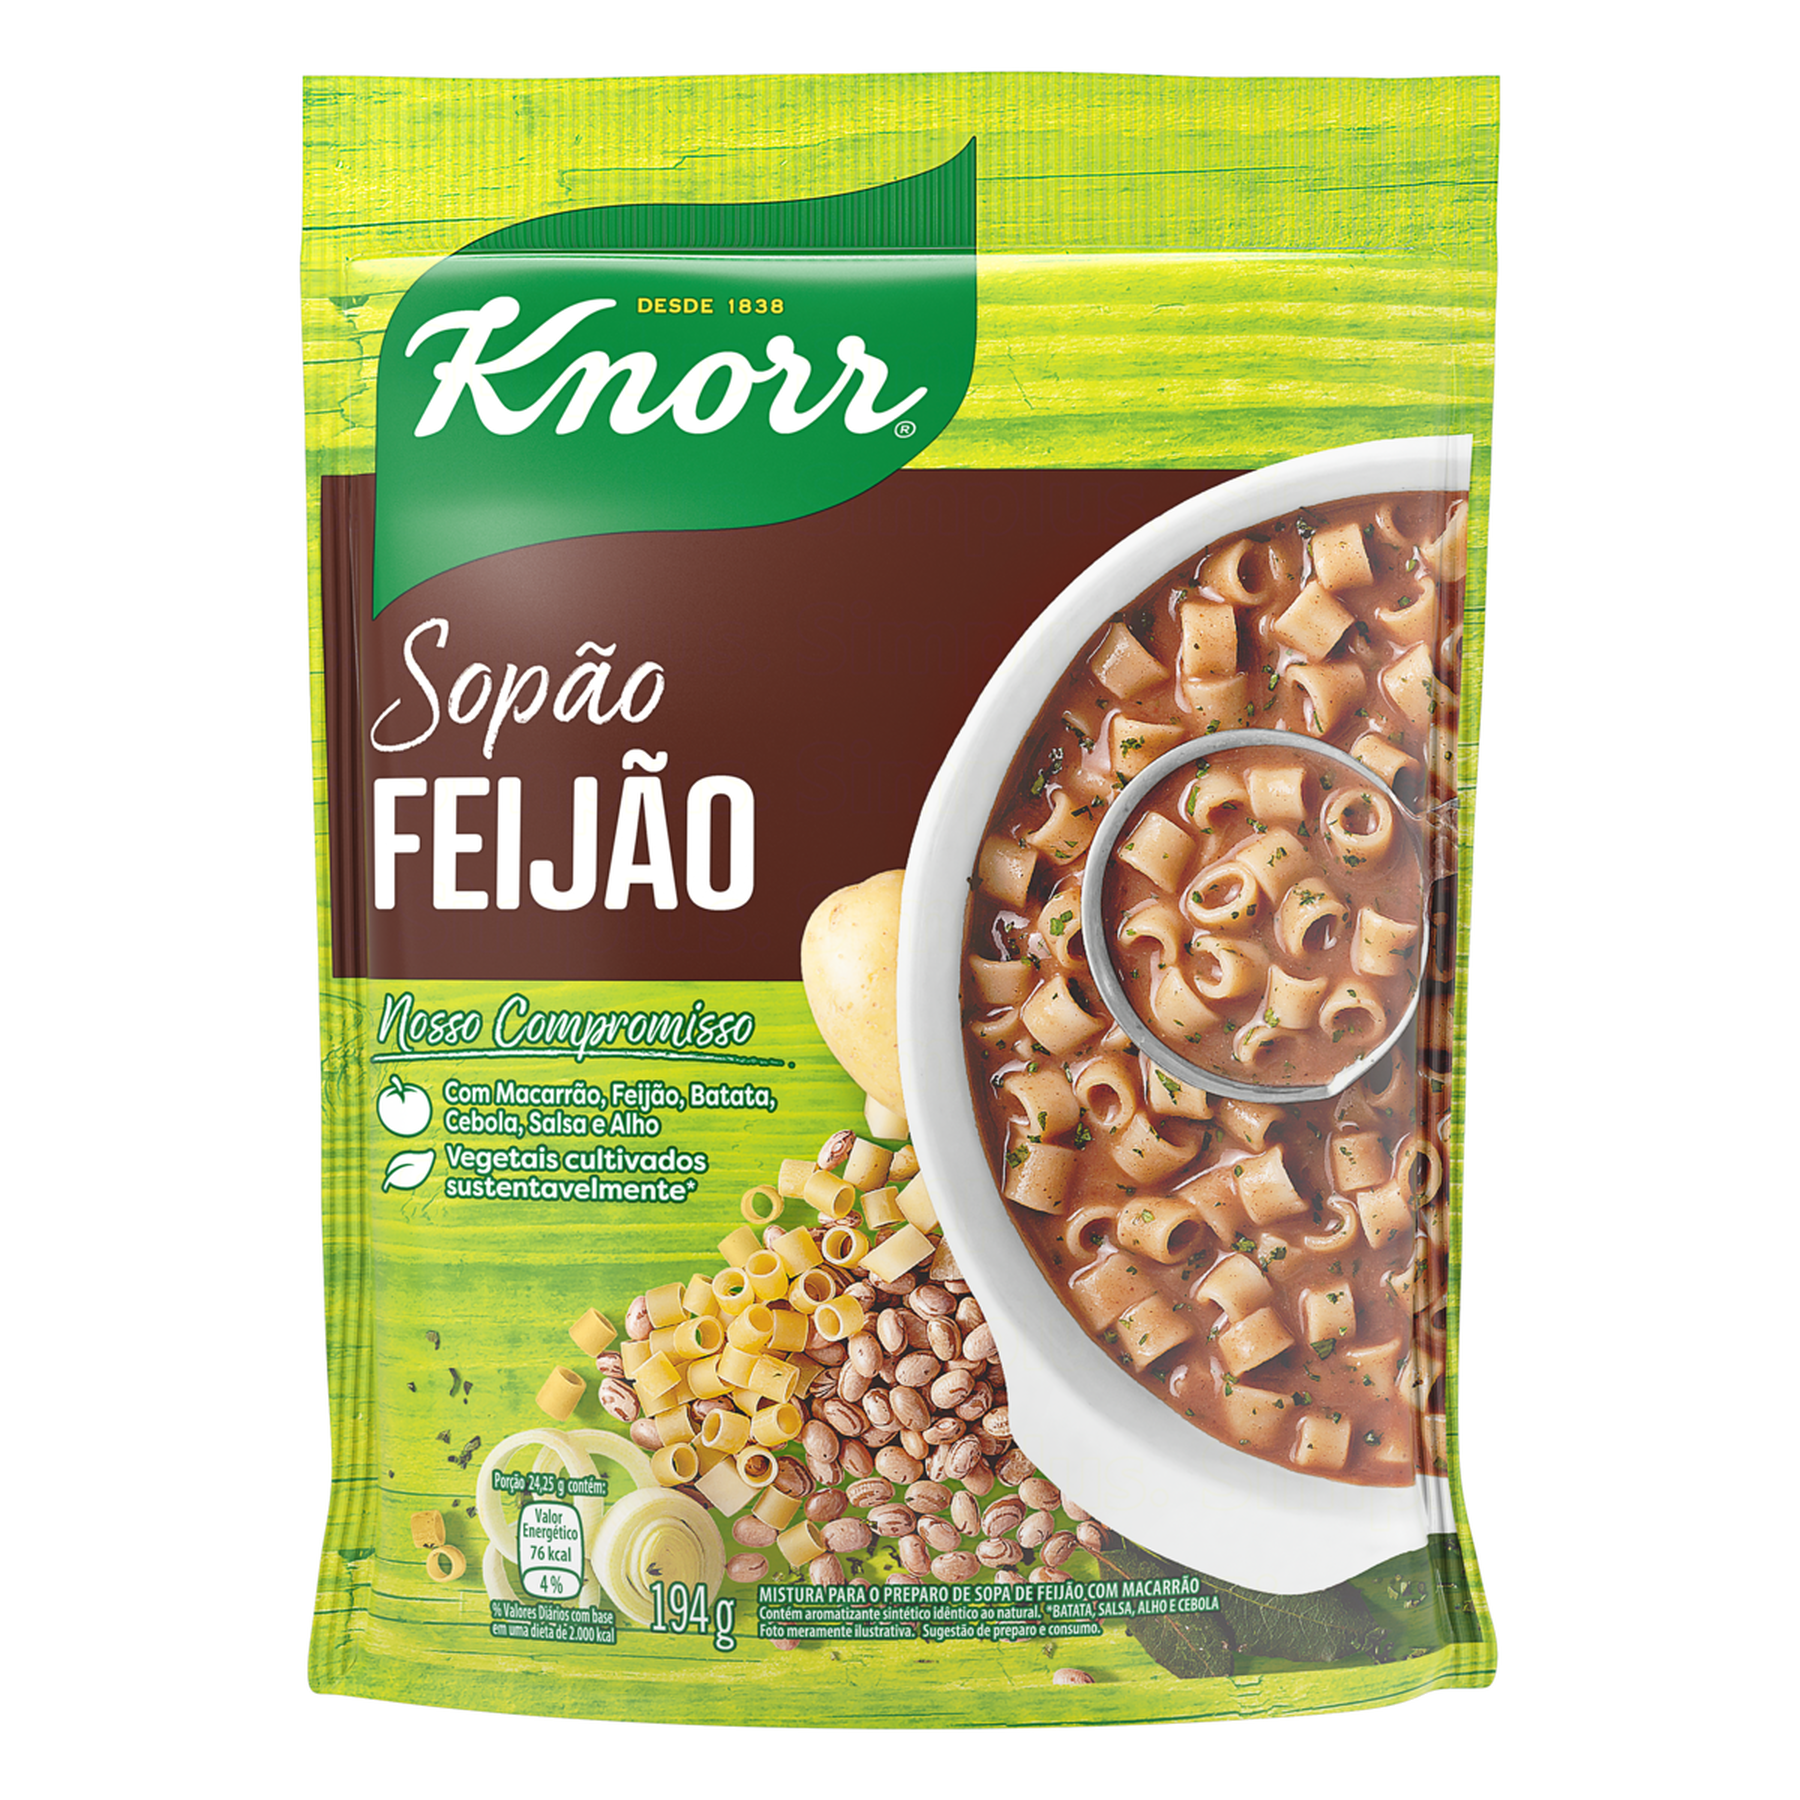 Sopão Feijão Knorr Sachê 194g